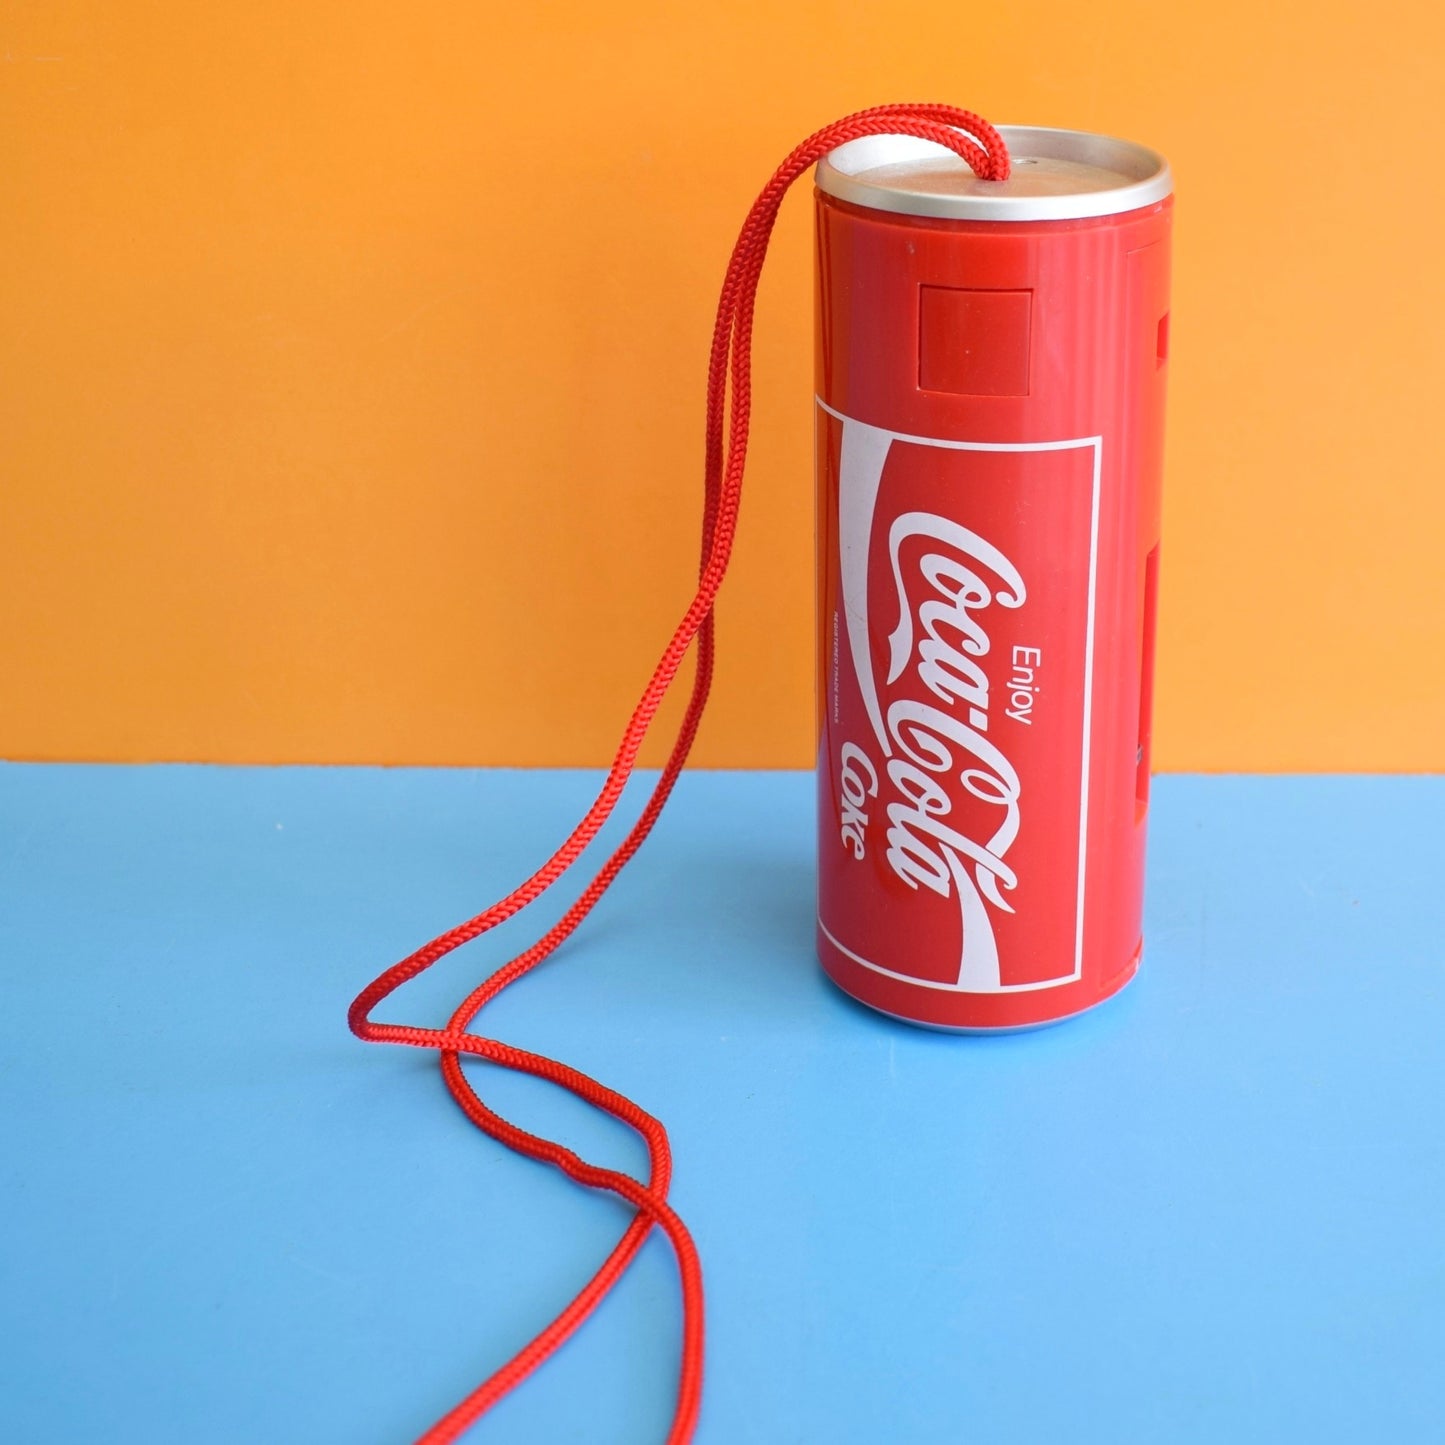 Vintage 1990s Camera- Coke Can / Coca Cola